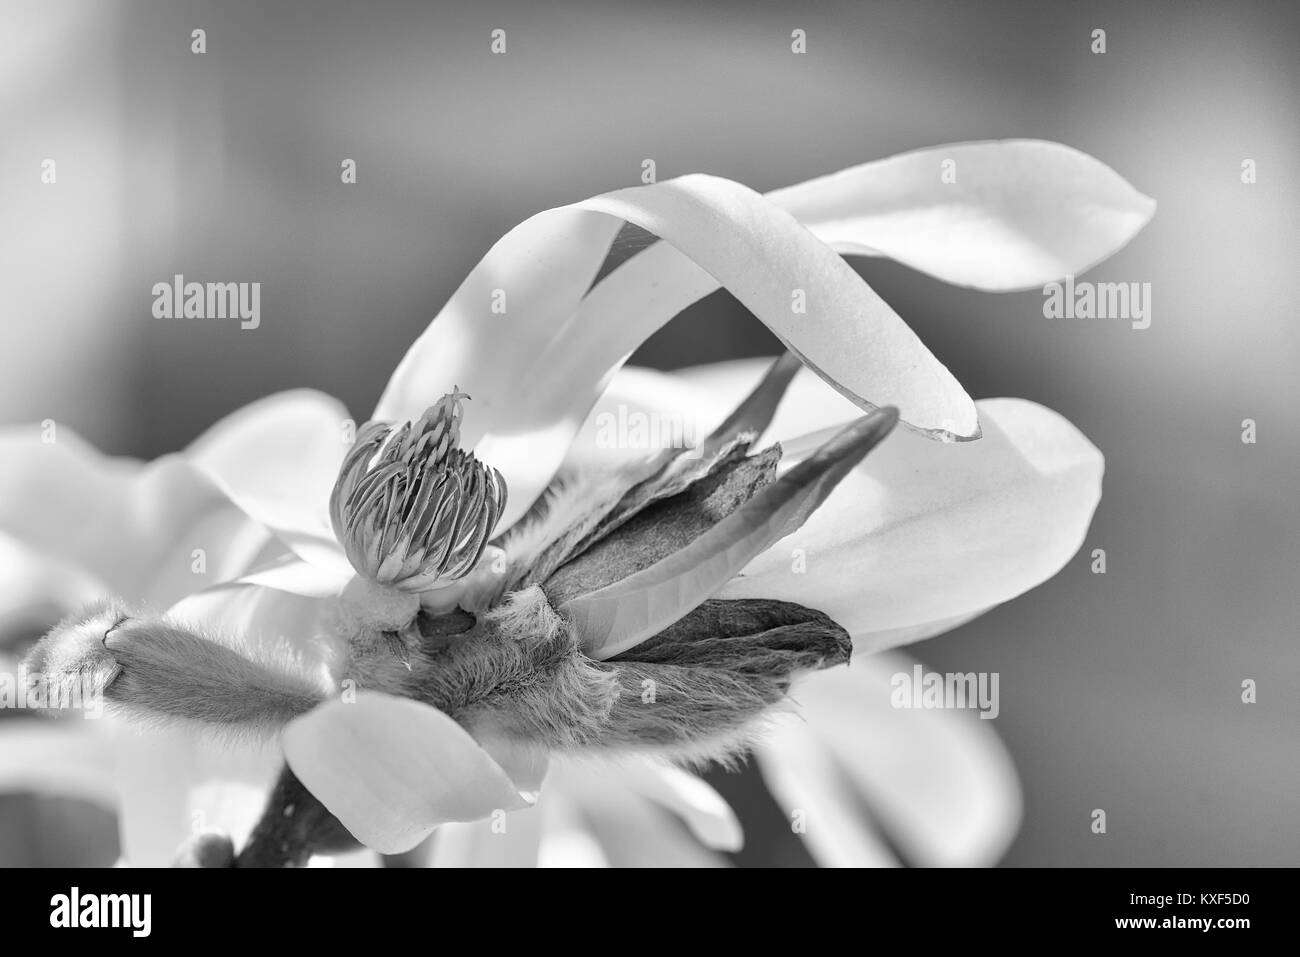 Naturel extérieur monochrome floral still life art macro floral d'un seul blanc rose vert jaune isolé jeune magnolia blossom floraison Banque D'Images